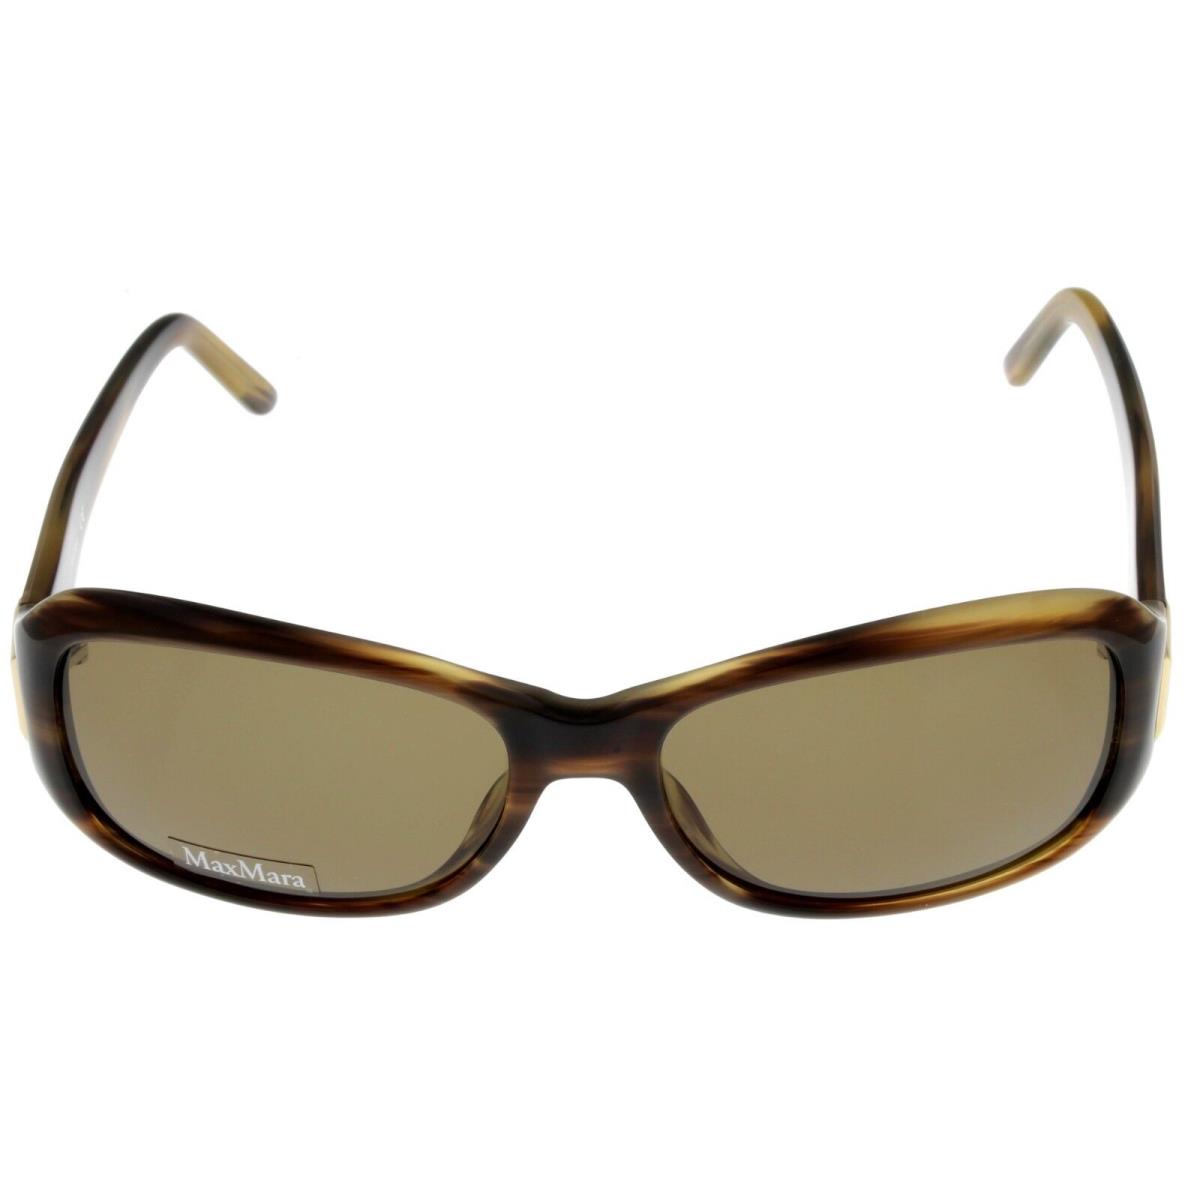 Max Mara Sunglasses Women Brown Tortoise Rectangular MM 904/S 2CM X7